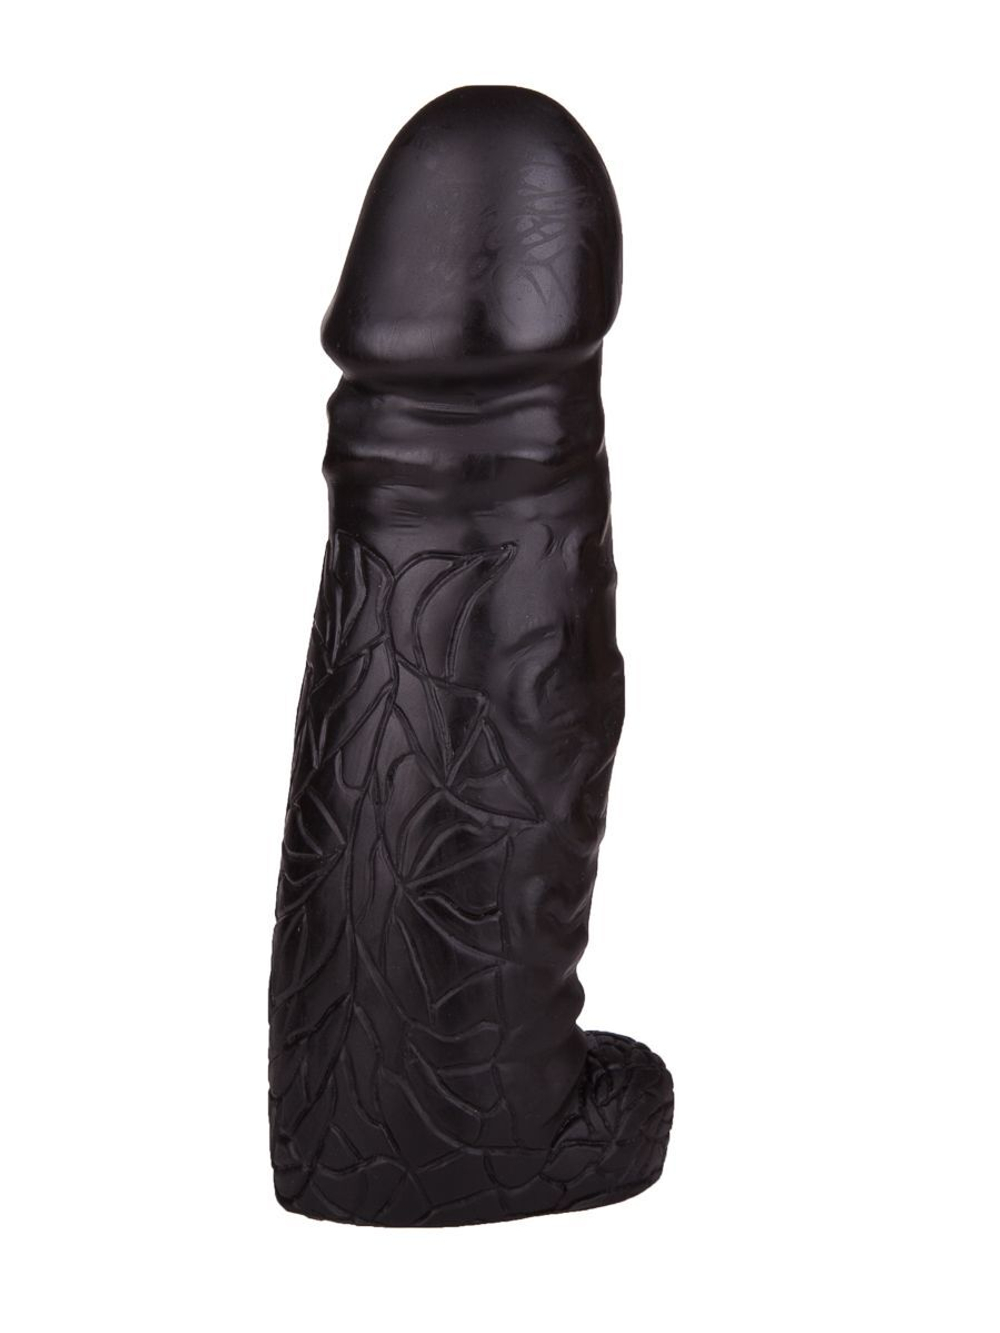 Чёрный фаллоимитатор-гигант DESPOT - 28 см.